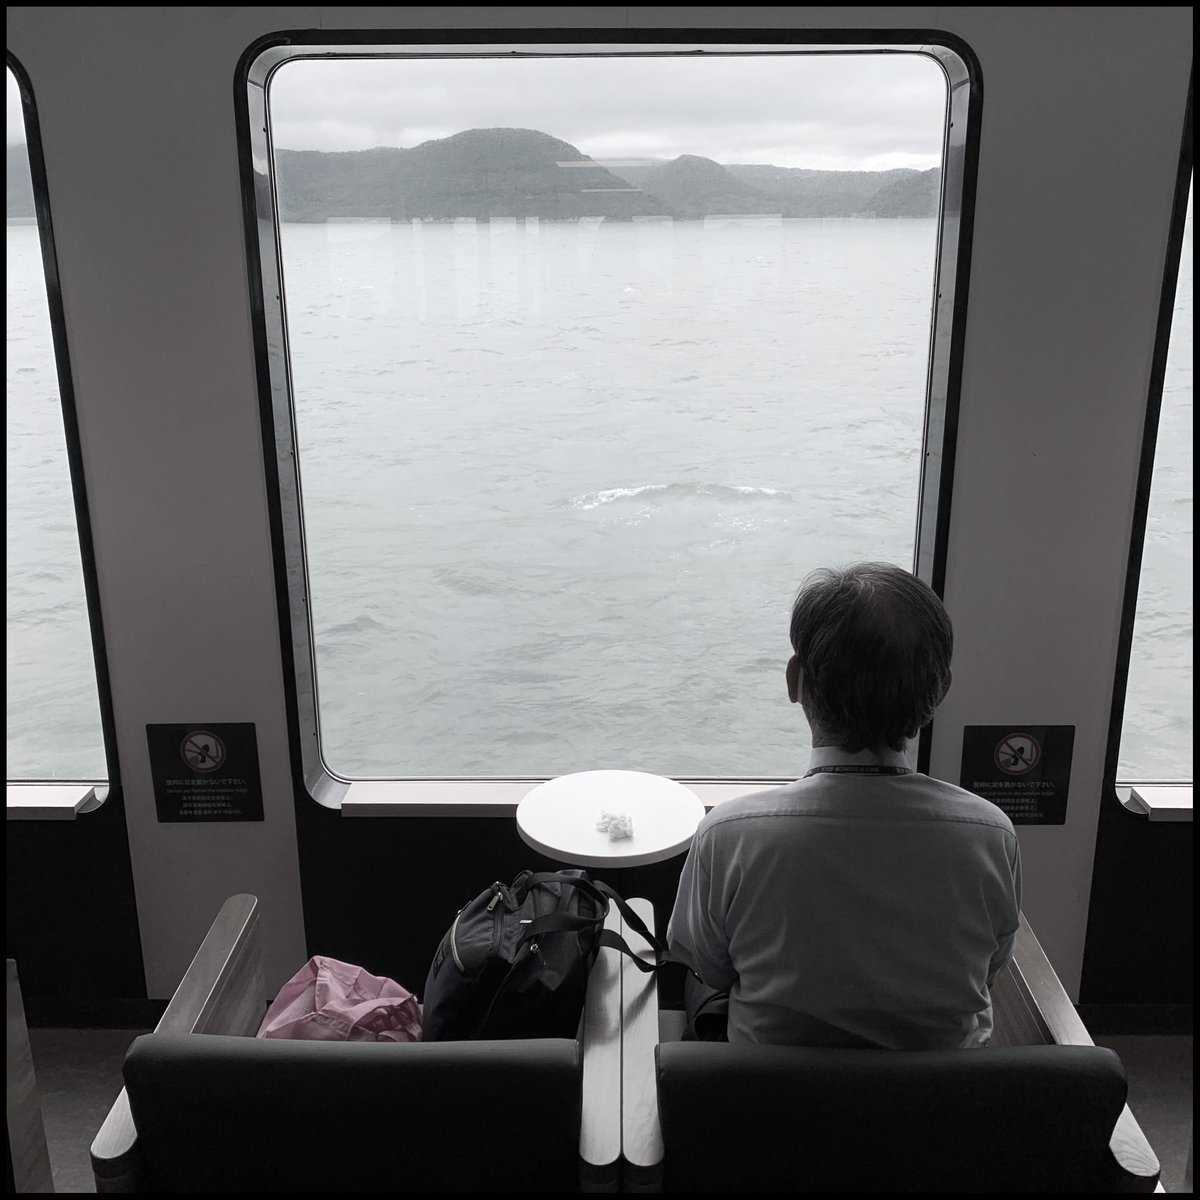 海
.
.
.
写真: @AvilaSimpson / 2023 #sea #japan #landscape #window #ship #instagood #backlight #man #men #shipphotography  #japanese #japan🇯🇵 #alvaroavilasimpson #maquigrafia #shootiniphone #shootoniphone #fullframephotography #everydayjapan #kagawa #japanship  #colorphotography